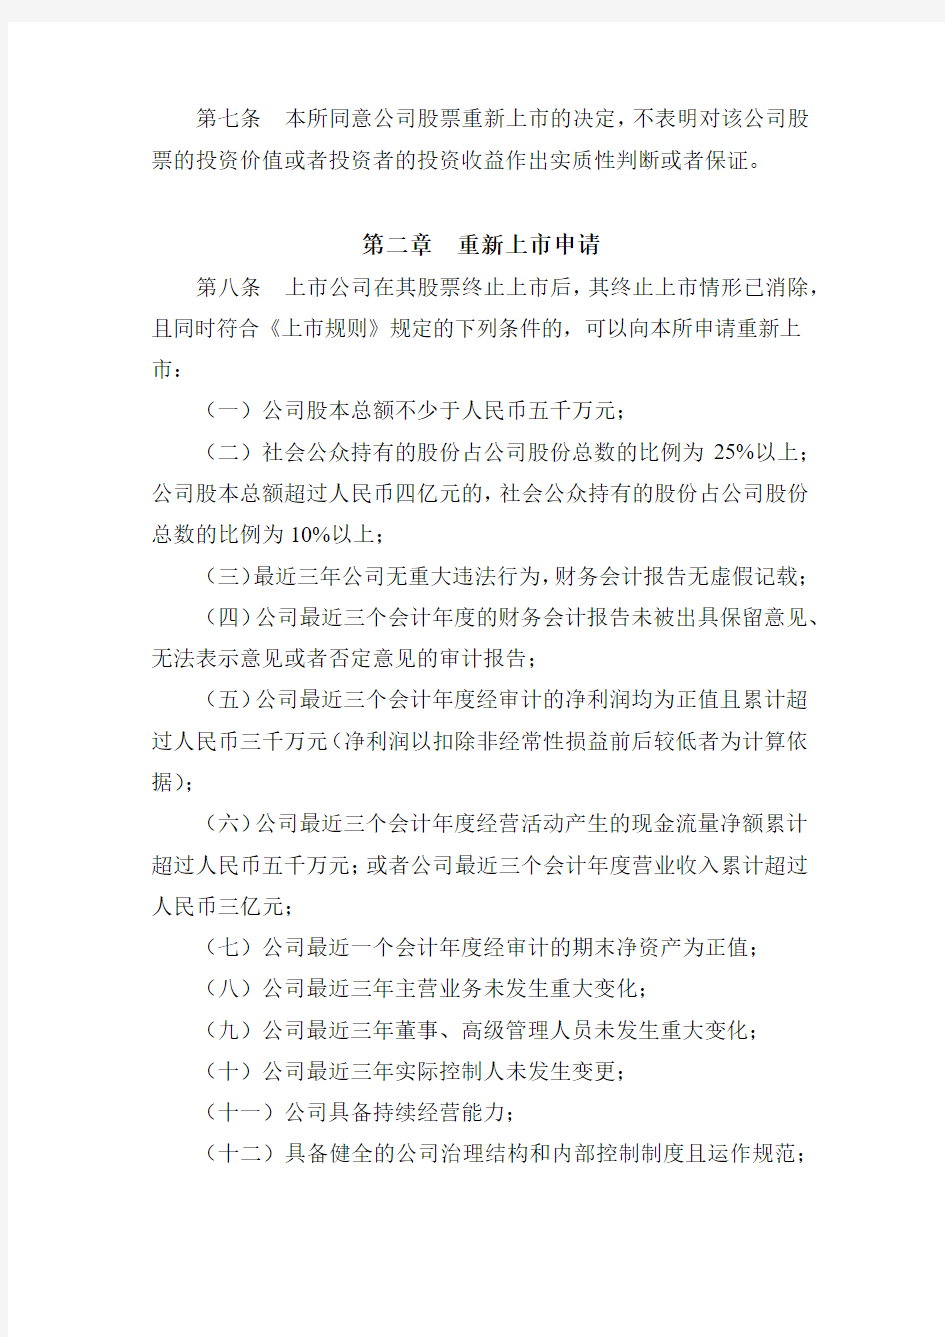 《深圳证券交易所退市公司重新上市实施办法》(2015年修订)